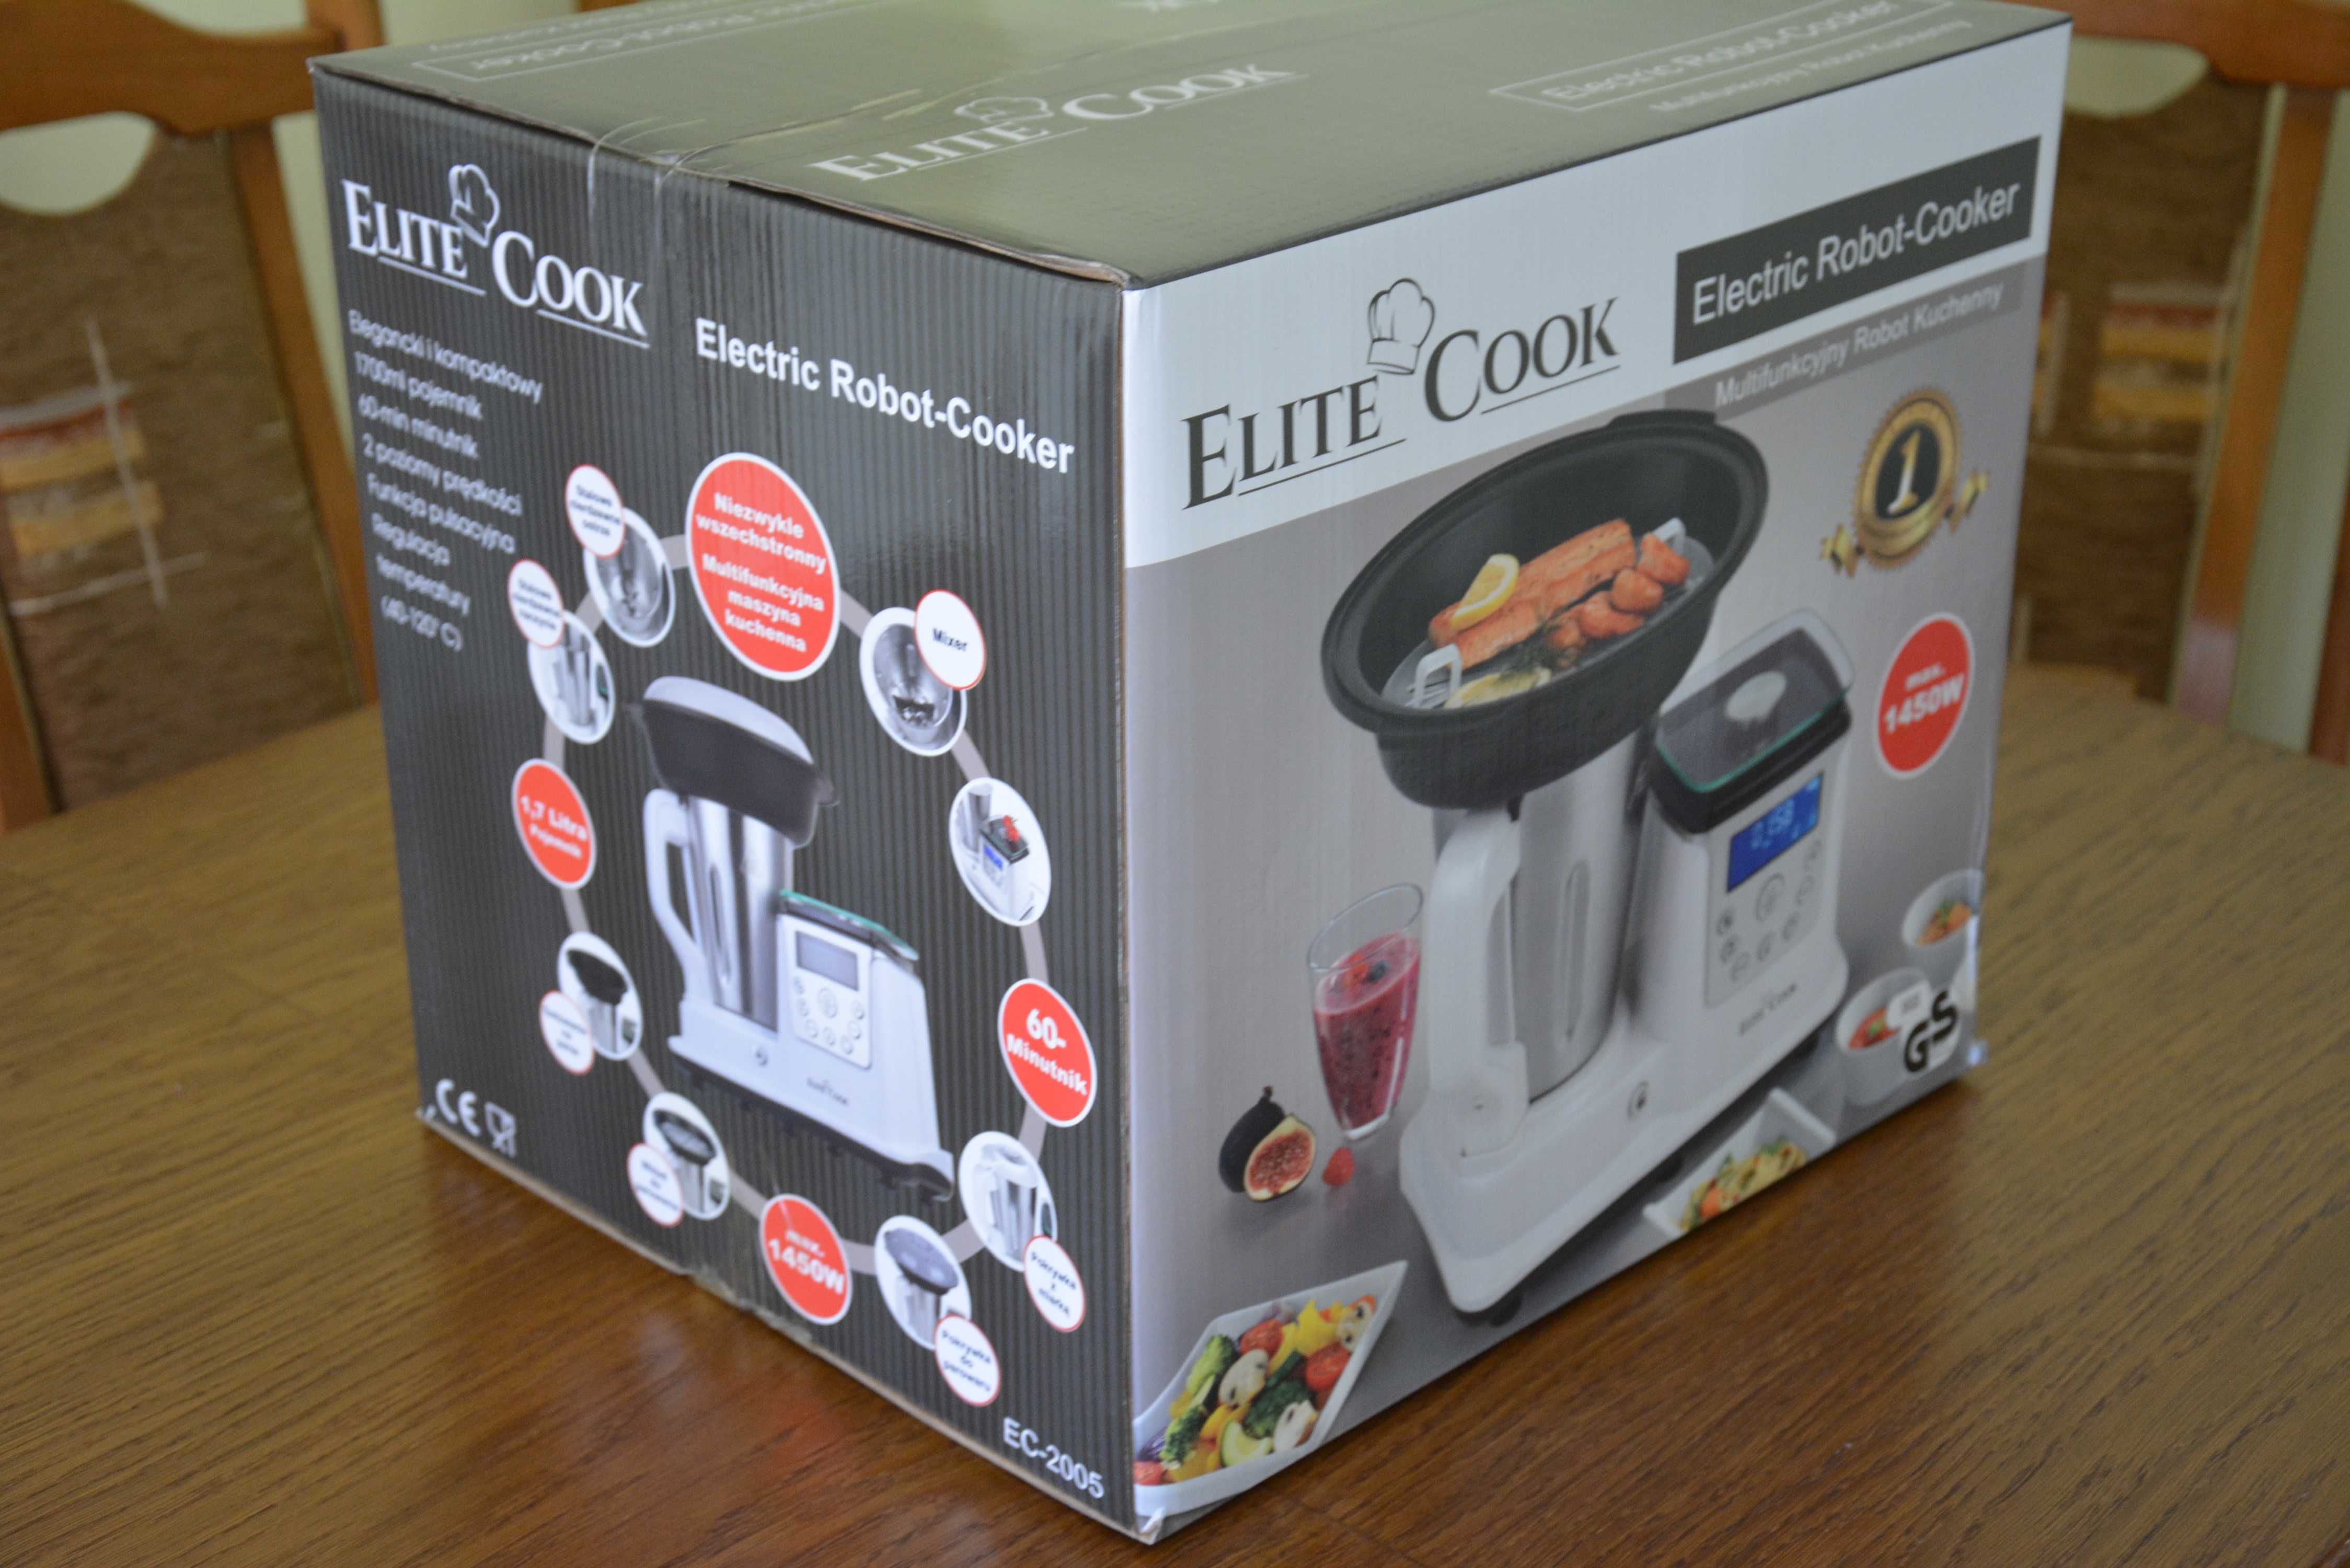 multicooker Elite Cook EC-2005 NOWE